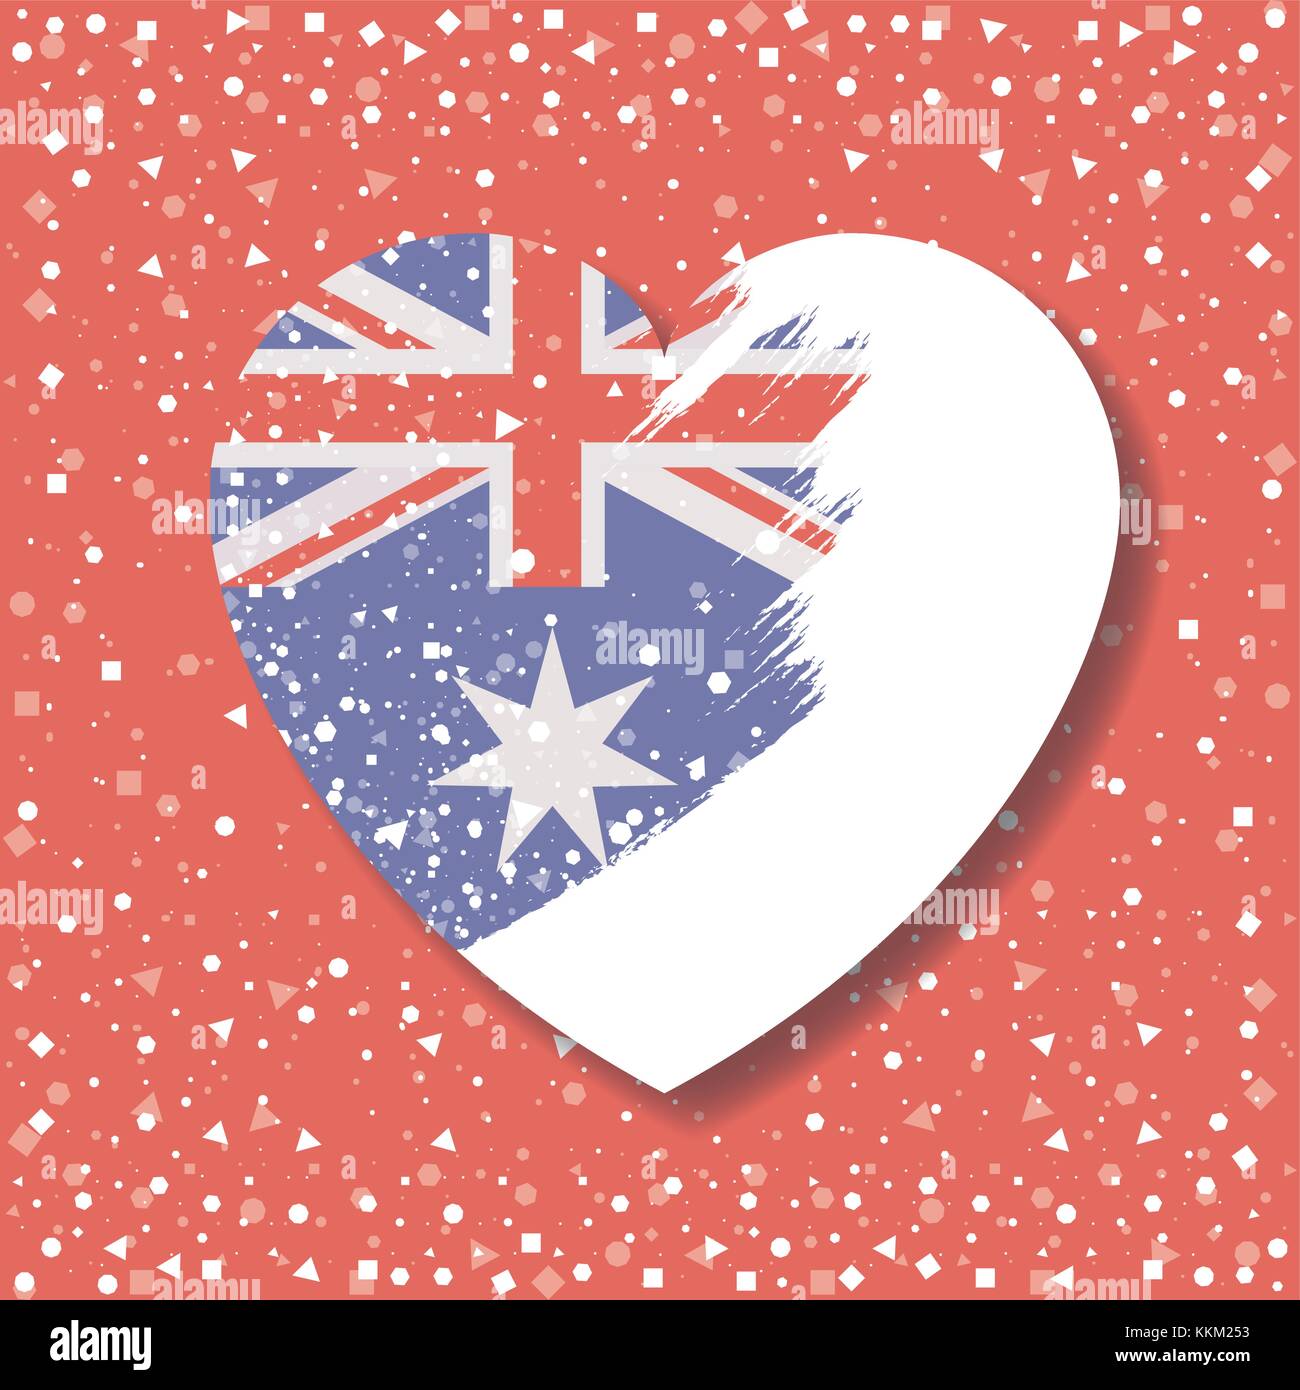 Cờ Australia màu đỏ trên nền trắng sáng rực, tình yêu cho quốc gia trong mỗi khoảnh khắc hiện hữu. Bức ảnh với hình dáng trái tim và cấp độ độ mờ sẽ là món quà vô cùng ý nghĩa cho những con tim yêu nước. Hãy xem nó để cảm nhận sự tự hào và những cảm xúc tuyệt vời mà cờ đỏ sao vàng mang lại.